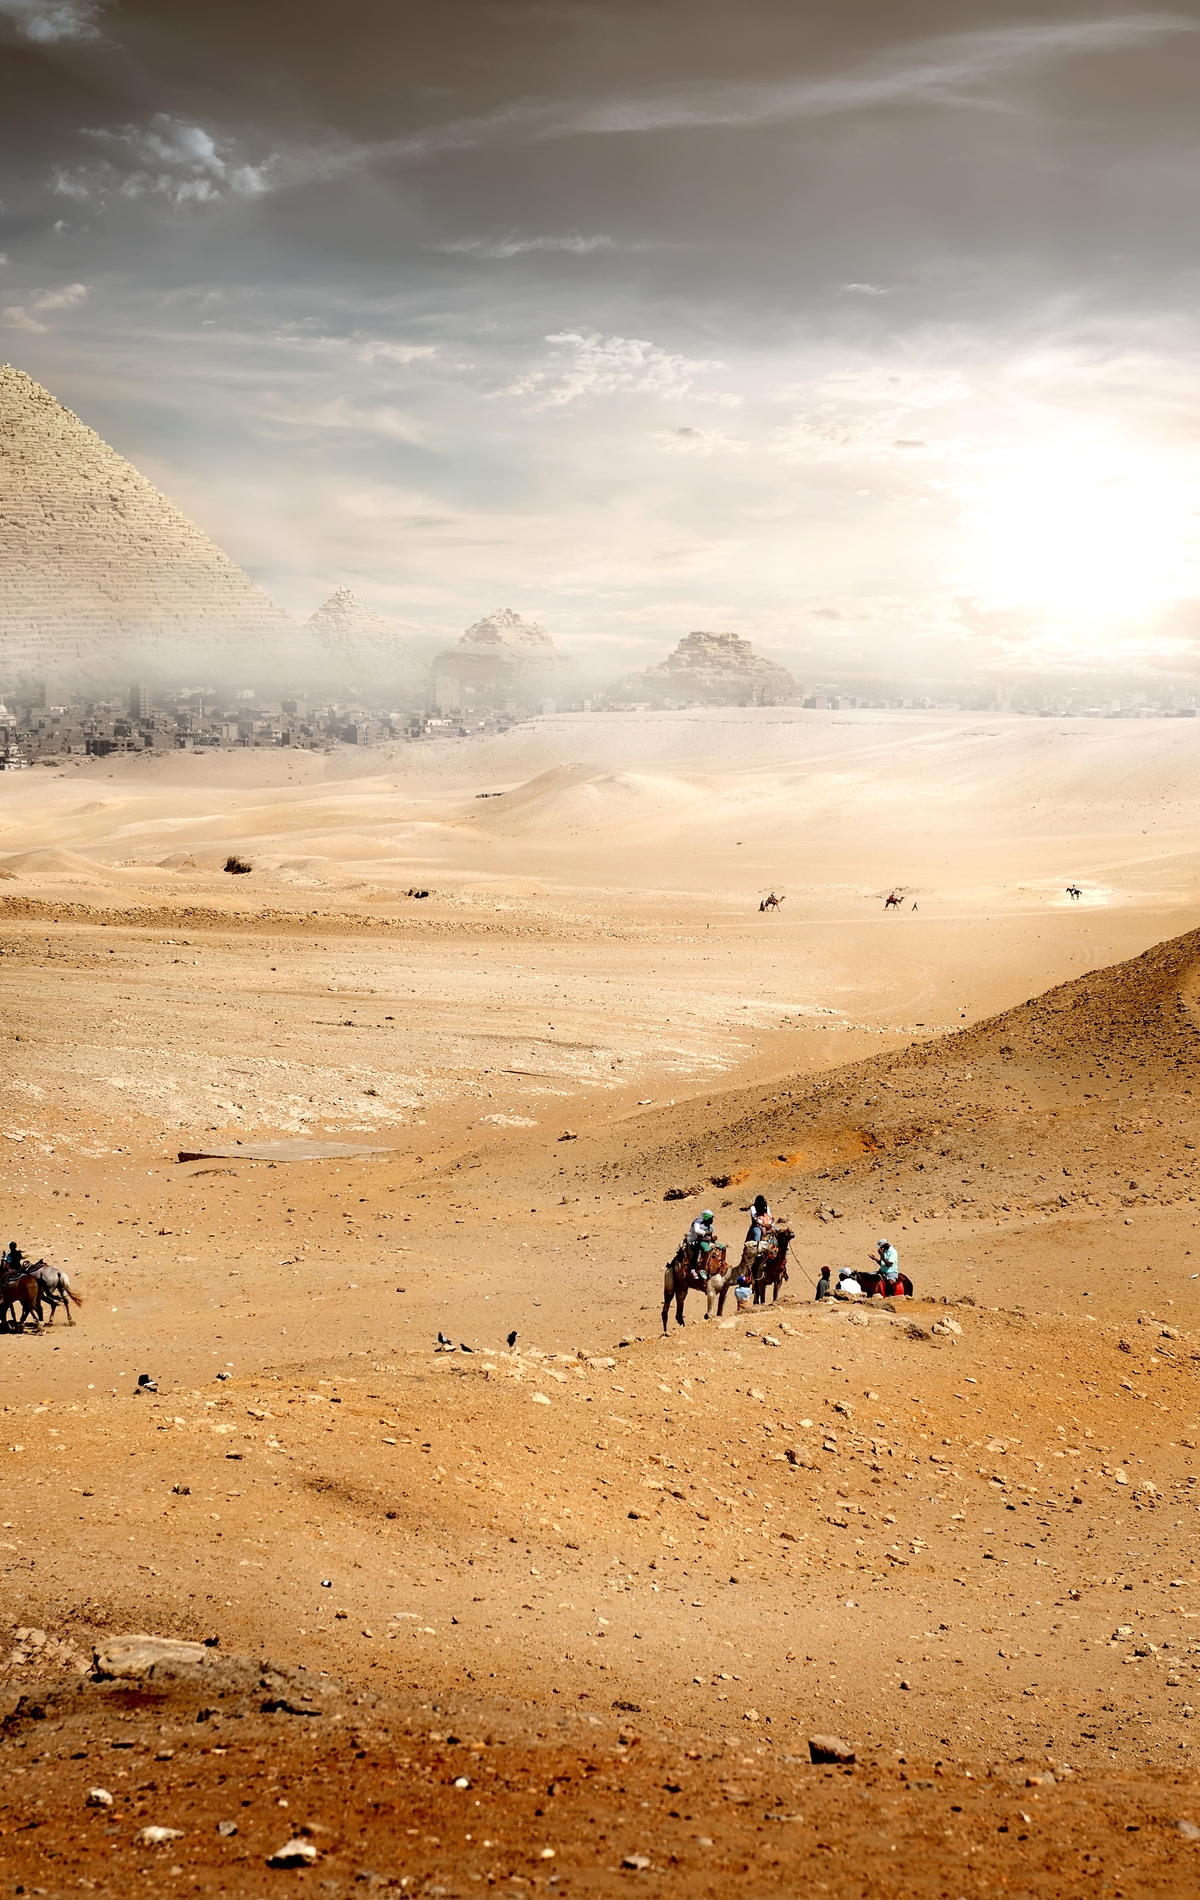 Картинка: Пустыня, Desert, лошади, верюлюды, пески, небо, город, пирамиды, туман, солнце, облака, пейзаж, фантастика, люди